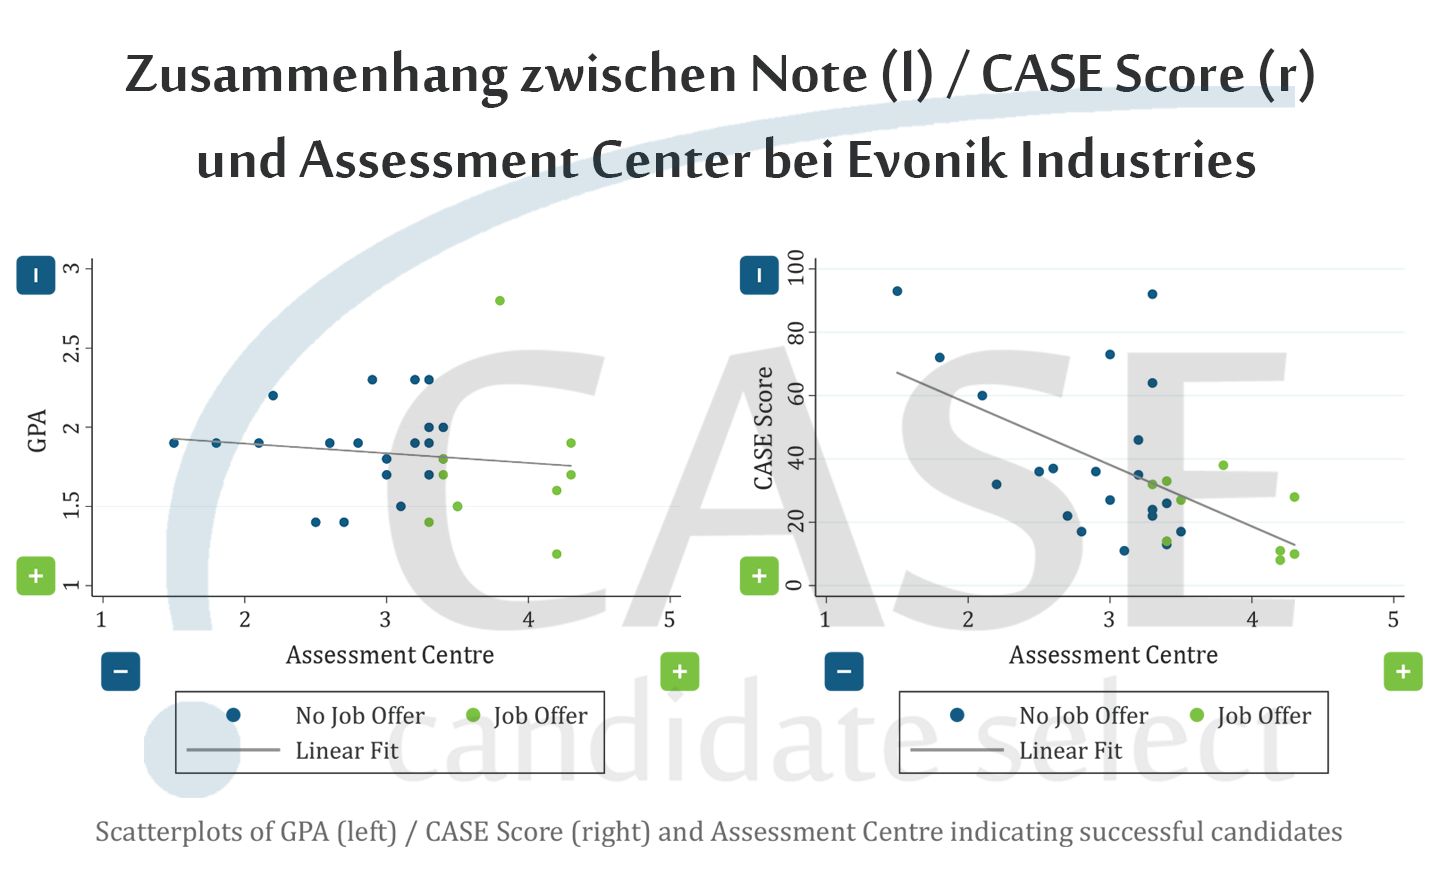 Kundenstudie: Seit 2016 bewertet Evonik alle akademischen Abschlüsse mit dem CASE Score